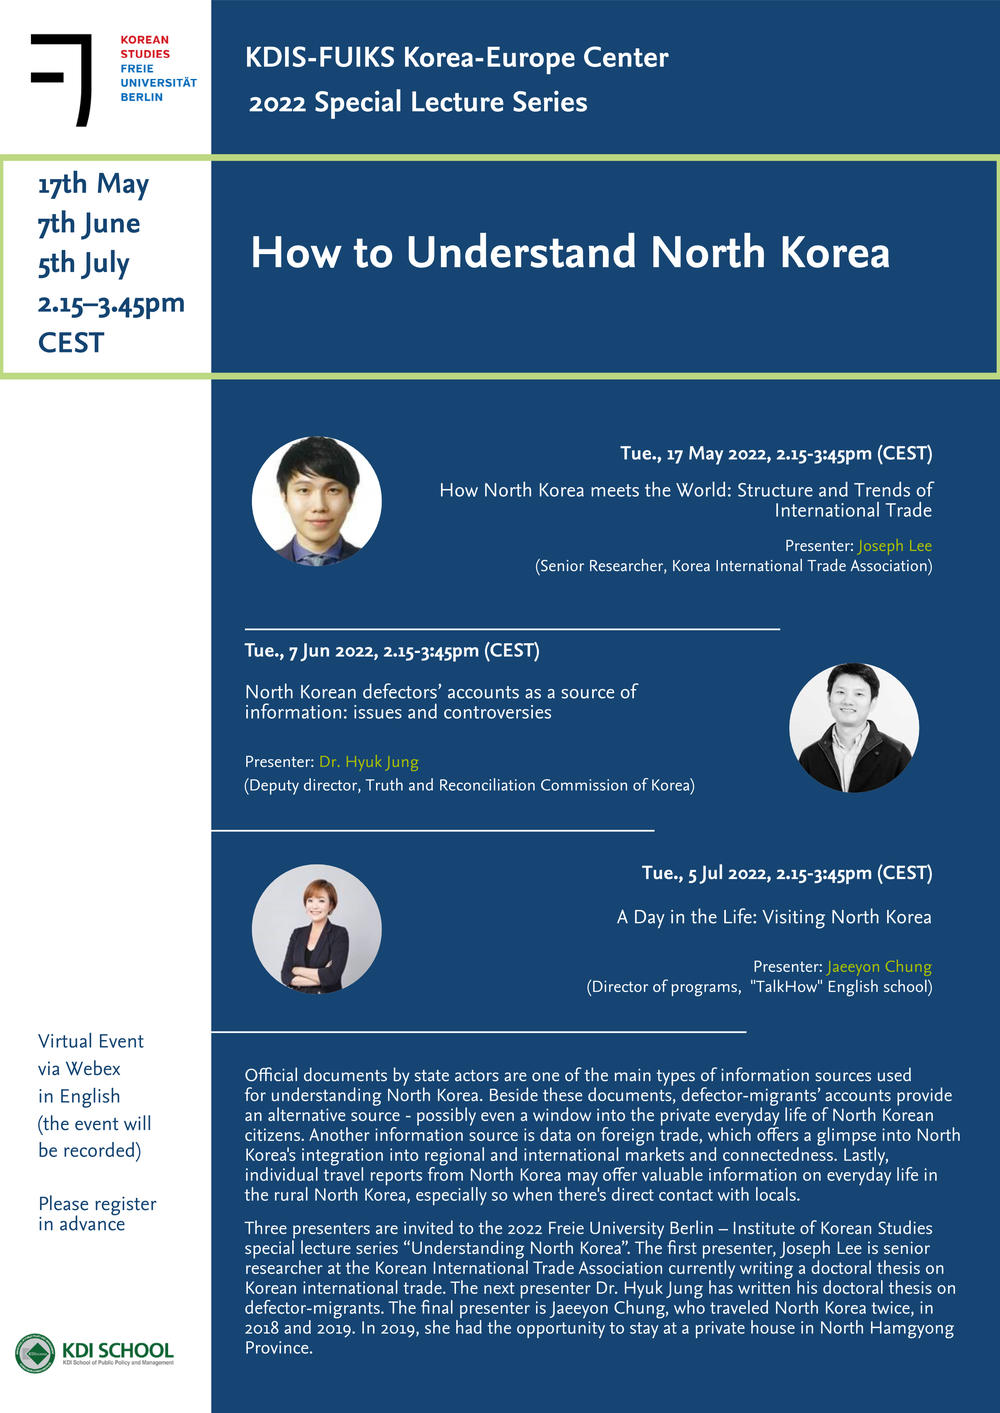 SLS 2022 - How to Understand North Korea